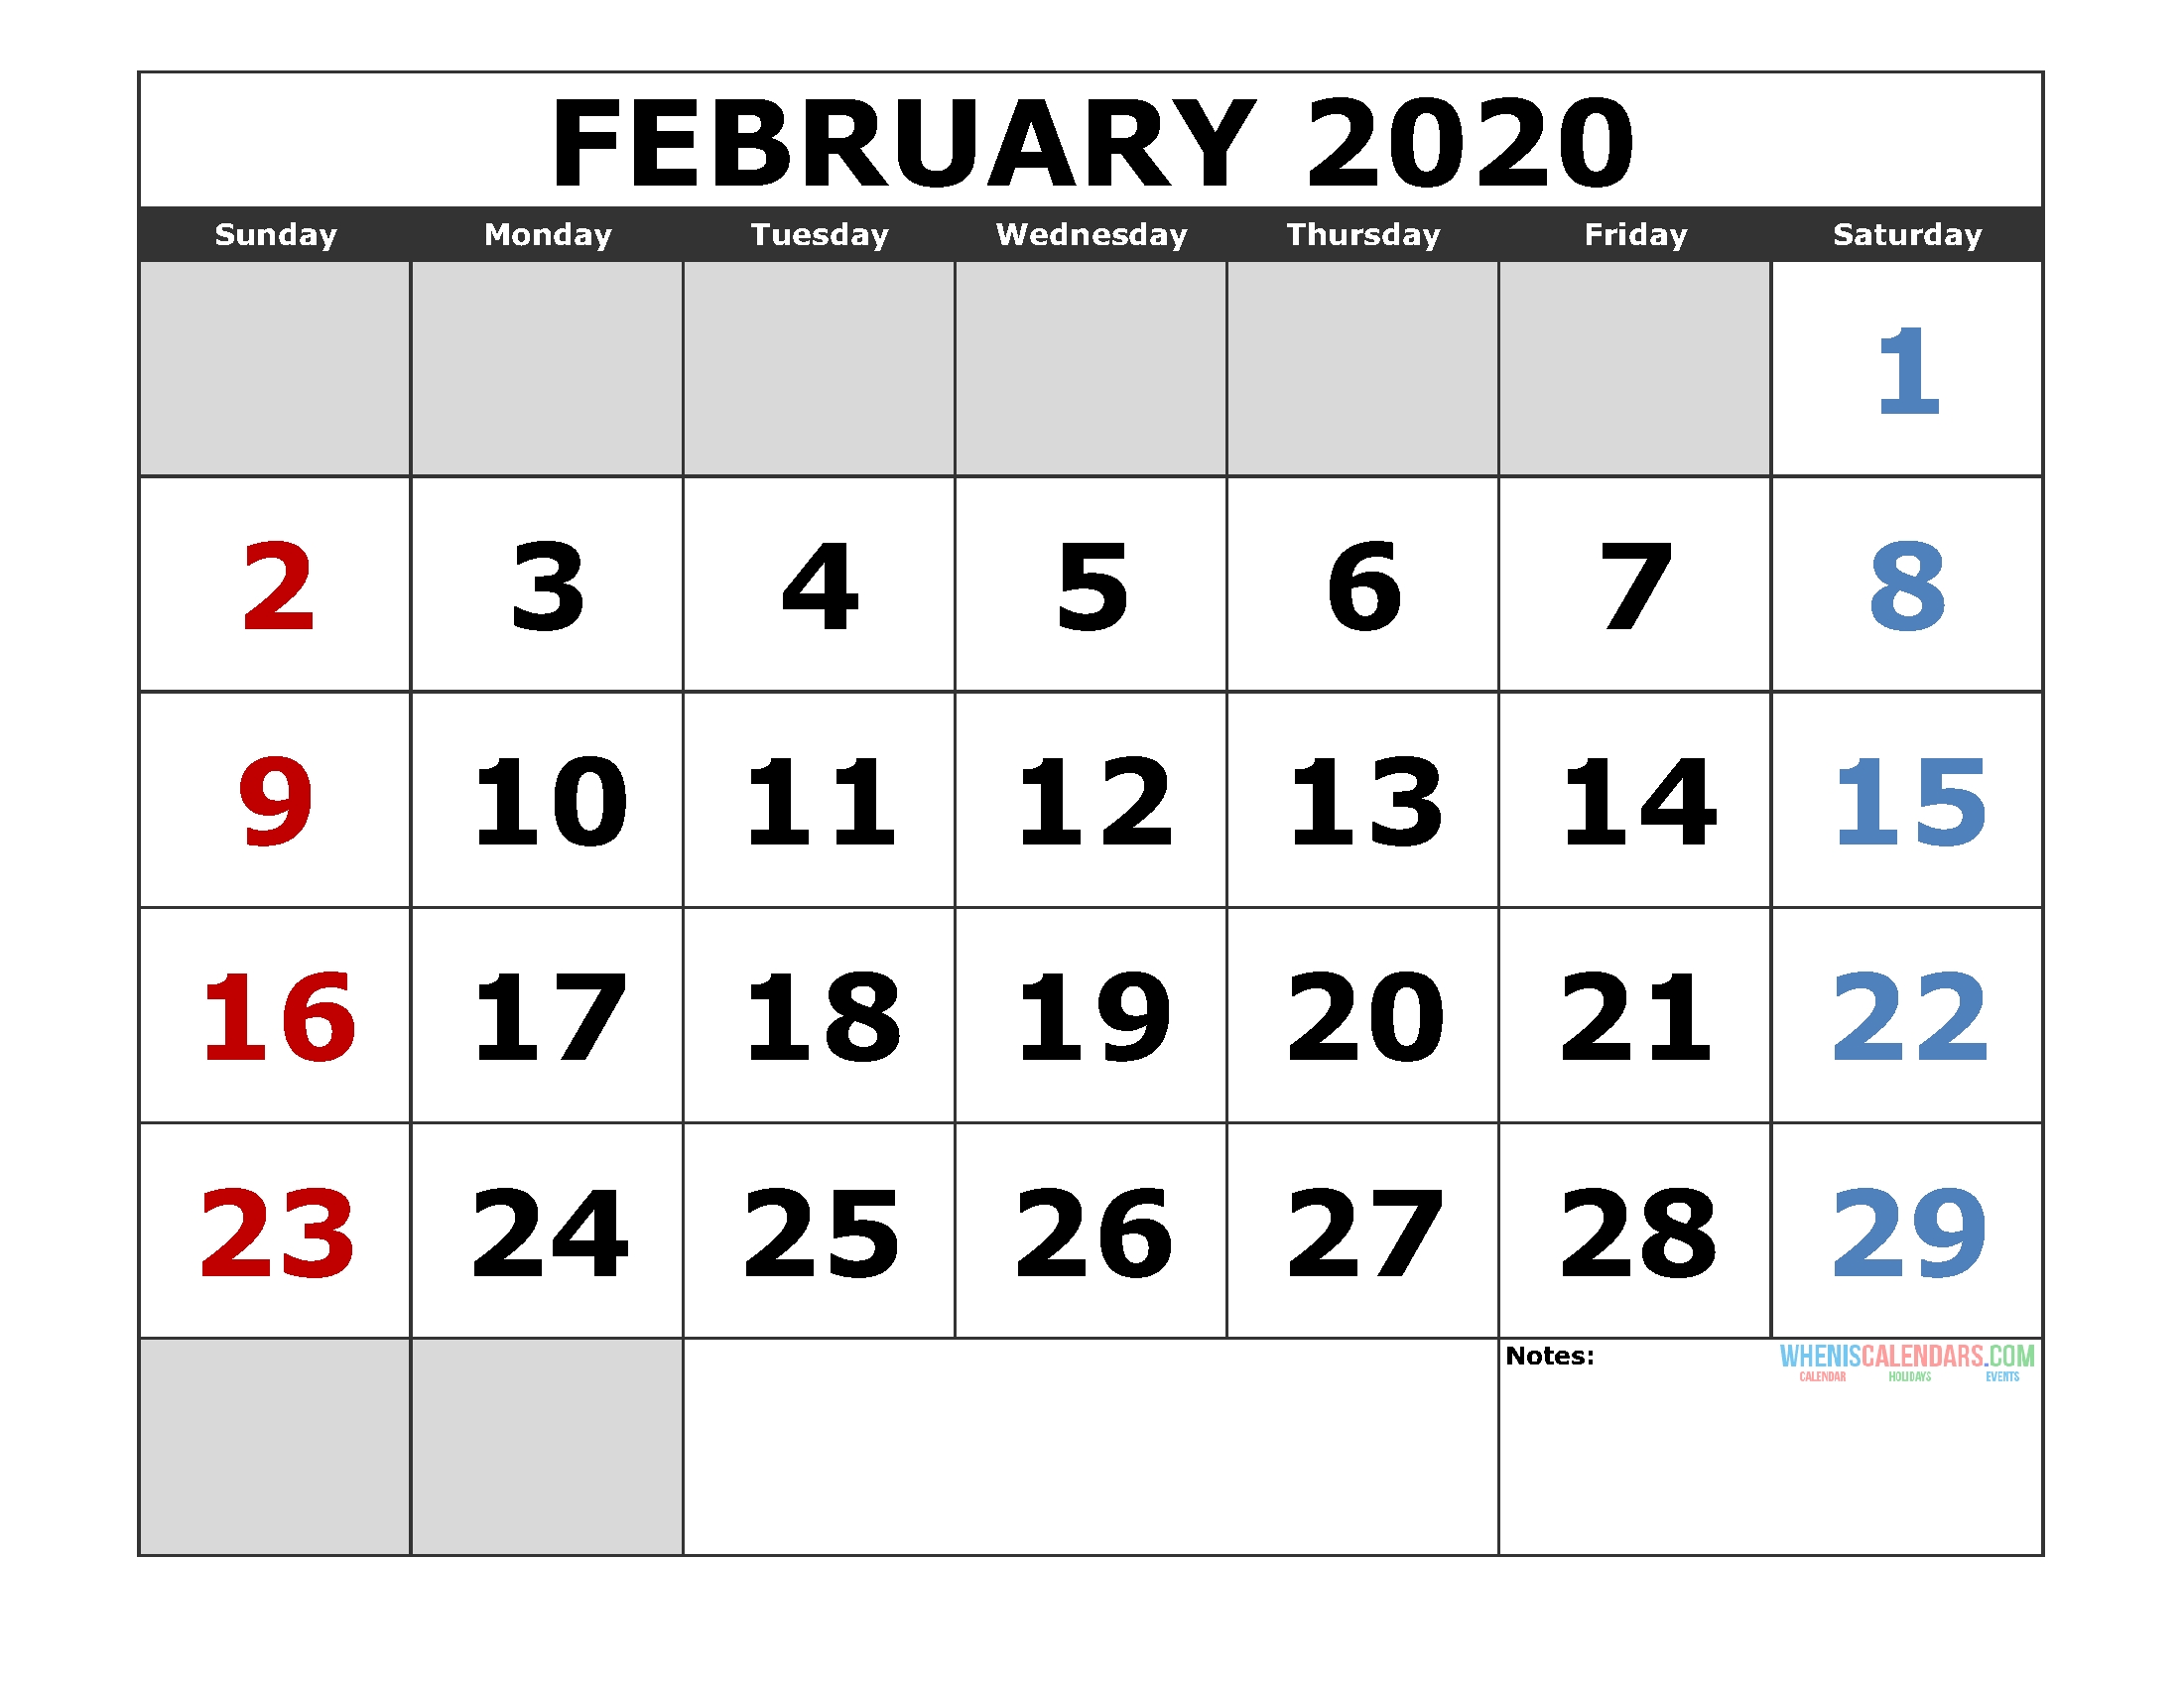 February 2020 Printable Calendar Template Excel, Pdf, Image Feb 2 2020 Calendar